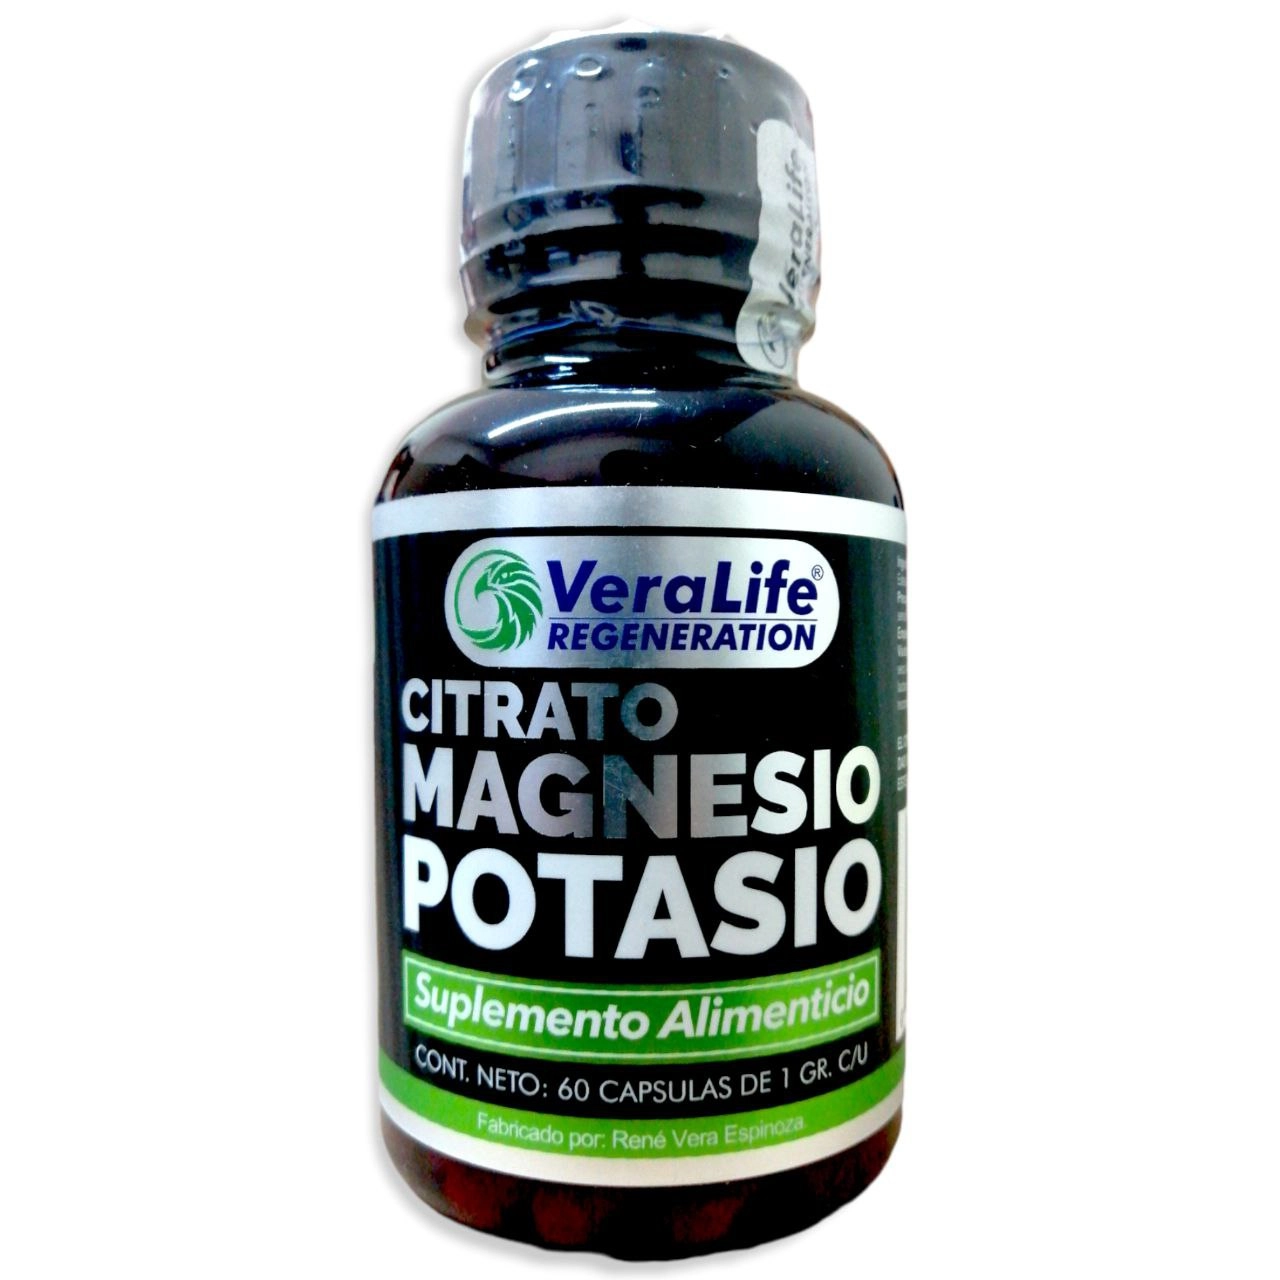 Citrato de magnesio y potasio 60 cápsulas, Foto 1 Figura Fácil